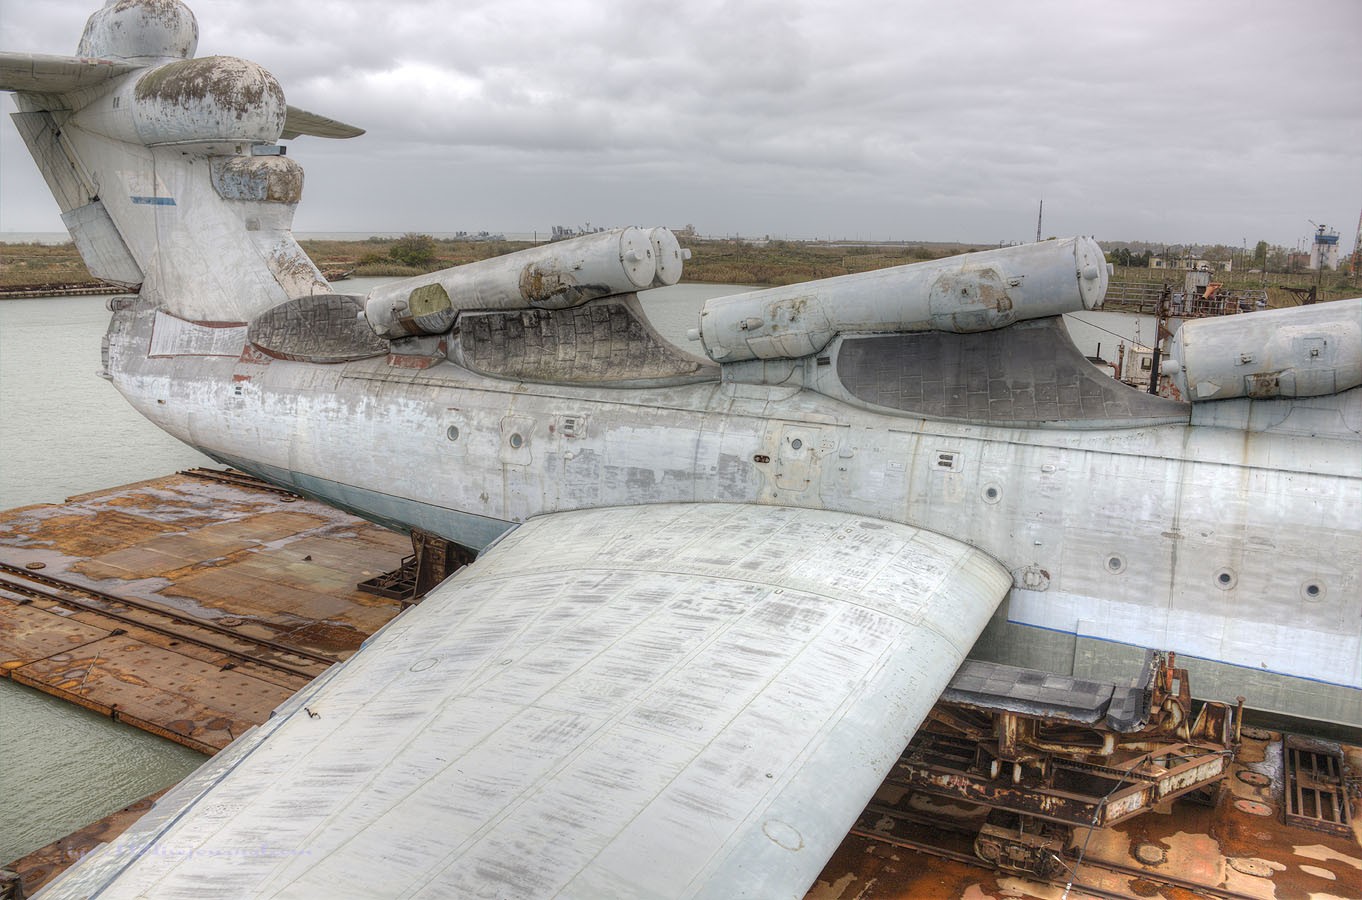 Lun Class Ekranoplan USSR Aircraft Wreck 1362x900